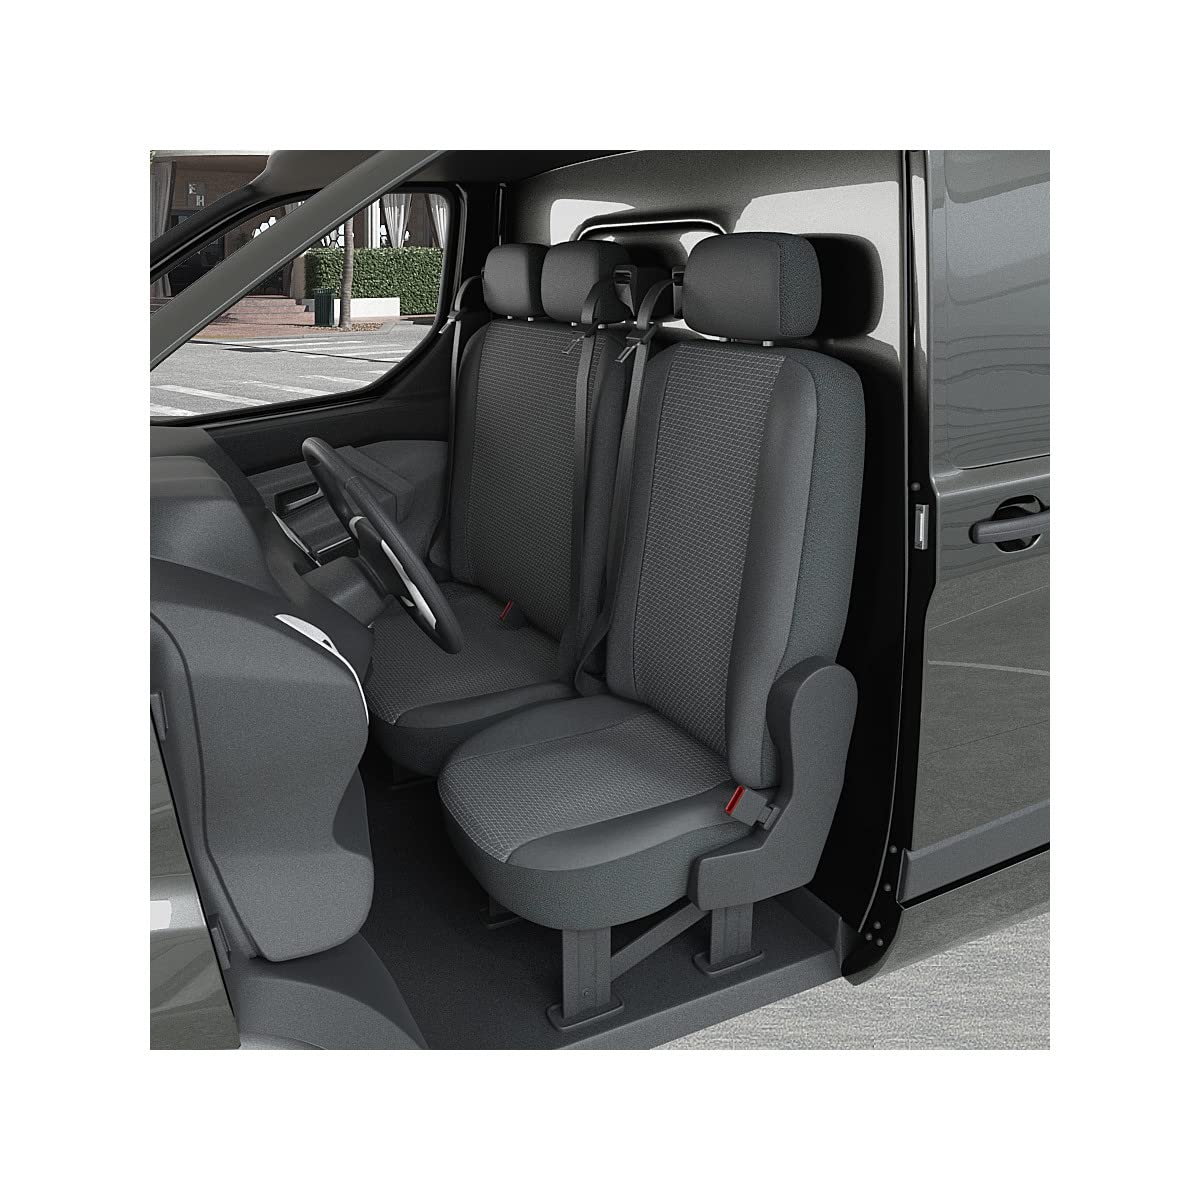 DBS 1013187 Sitzbezug für Auto/Nutzfahrzeuge, Kunstleder, schnelle Montage, kompatibel mit Airbag-Isofix-1013187 von DBS